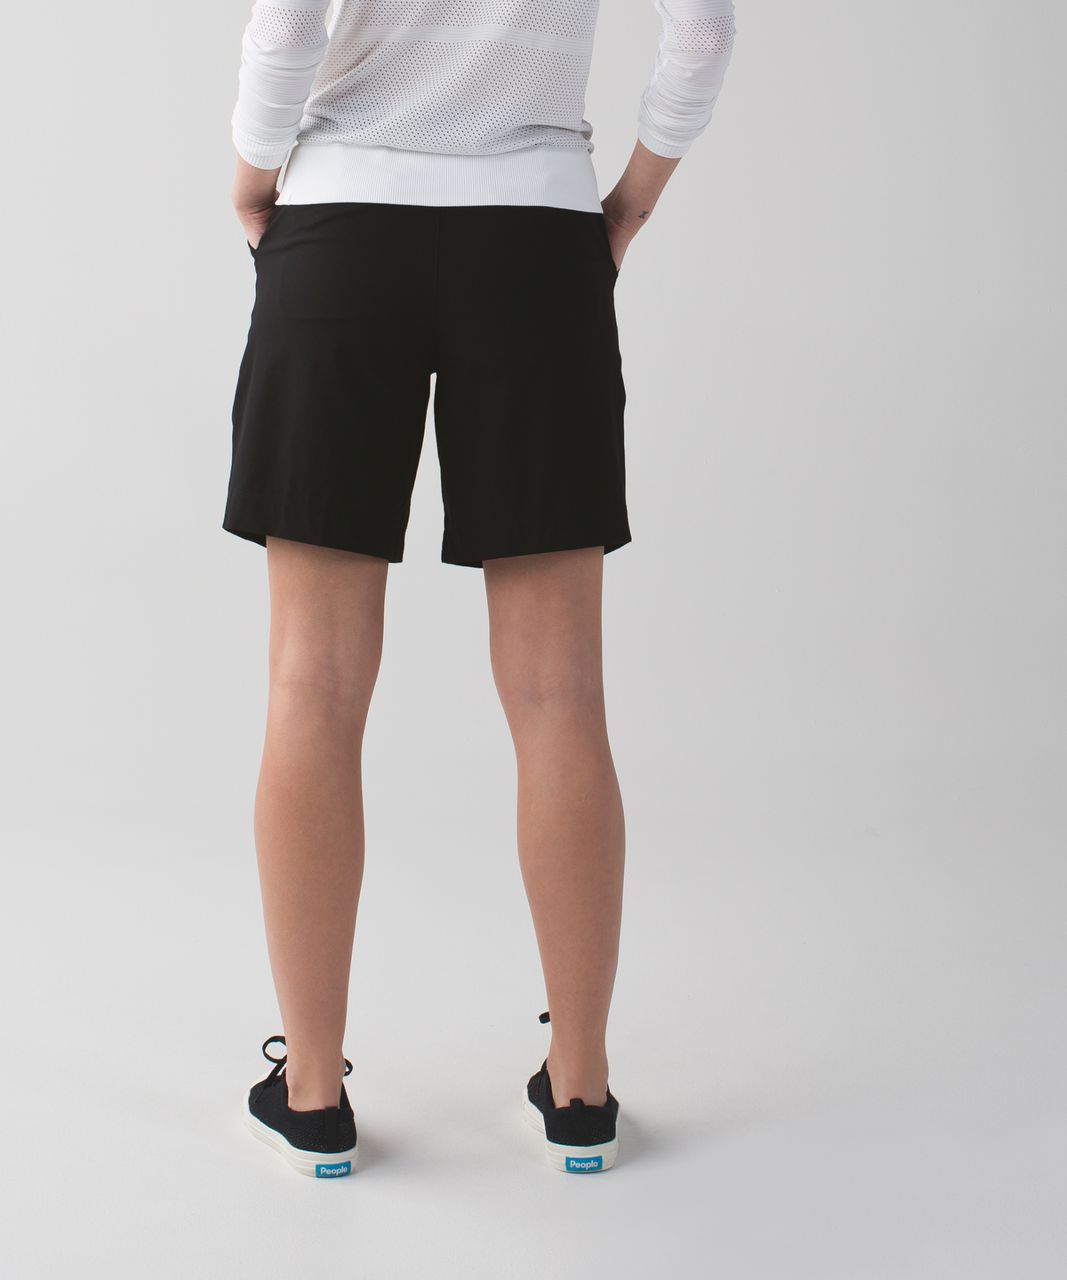 lululemon bermuda shorts